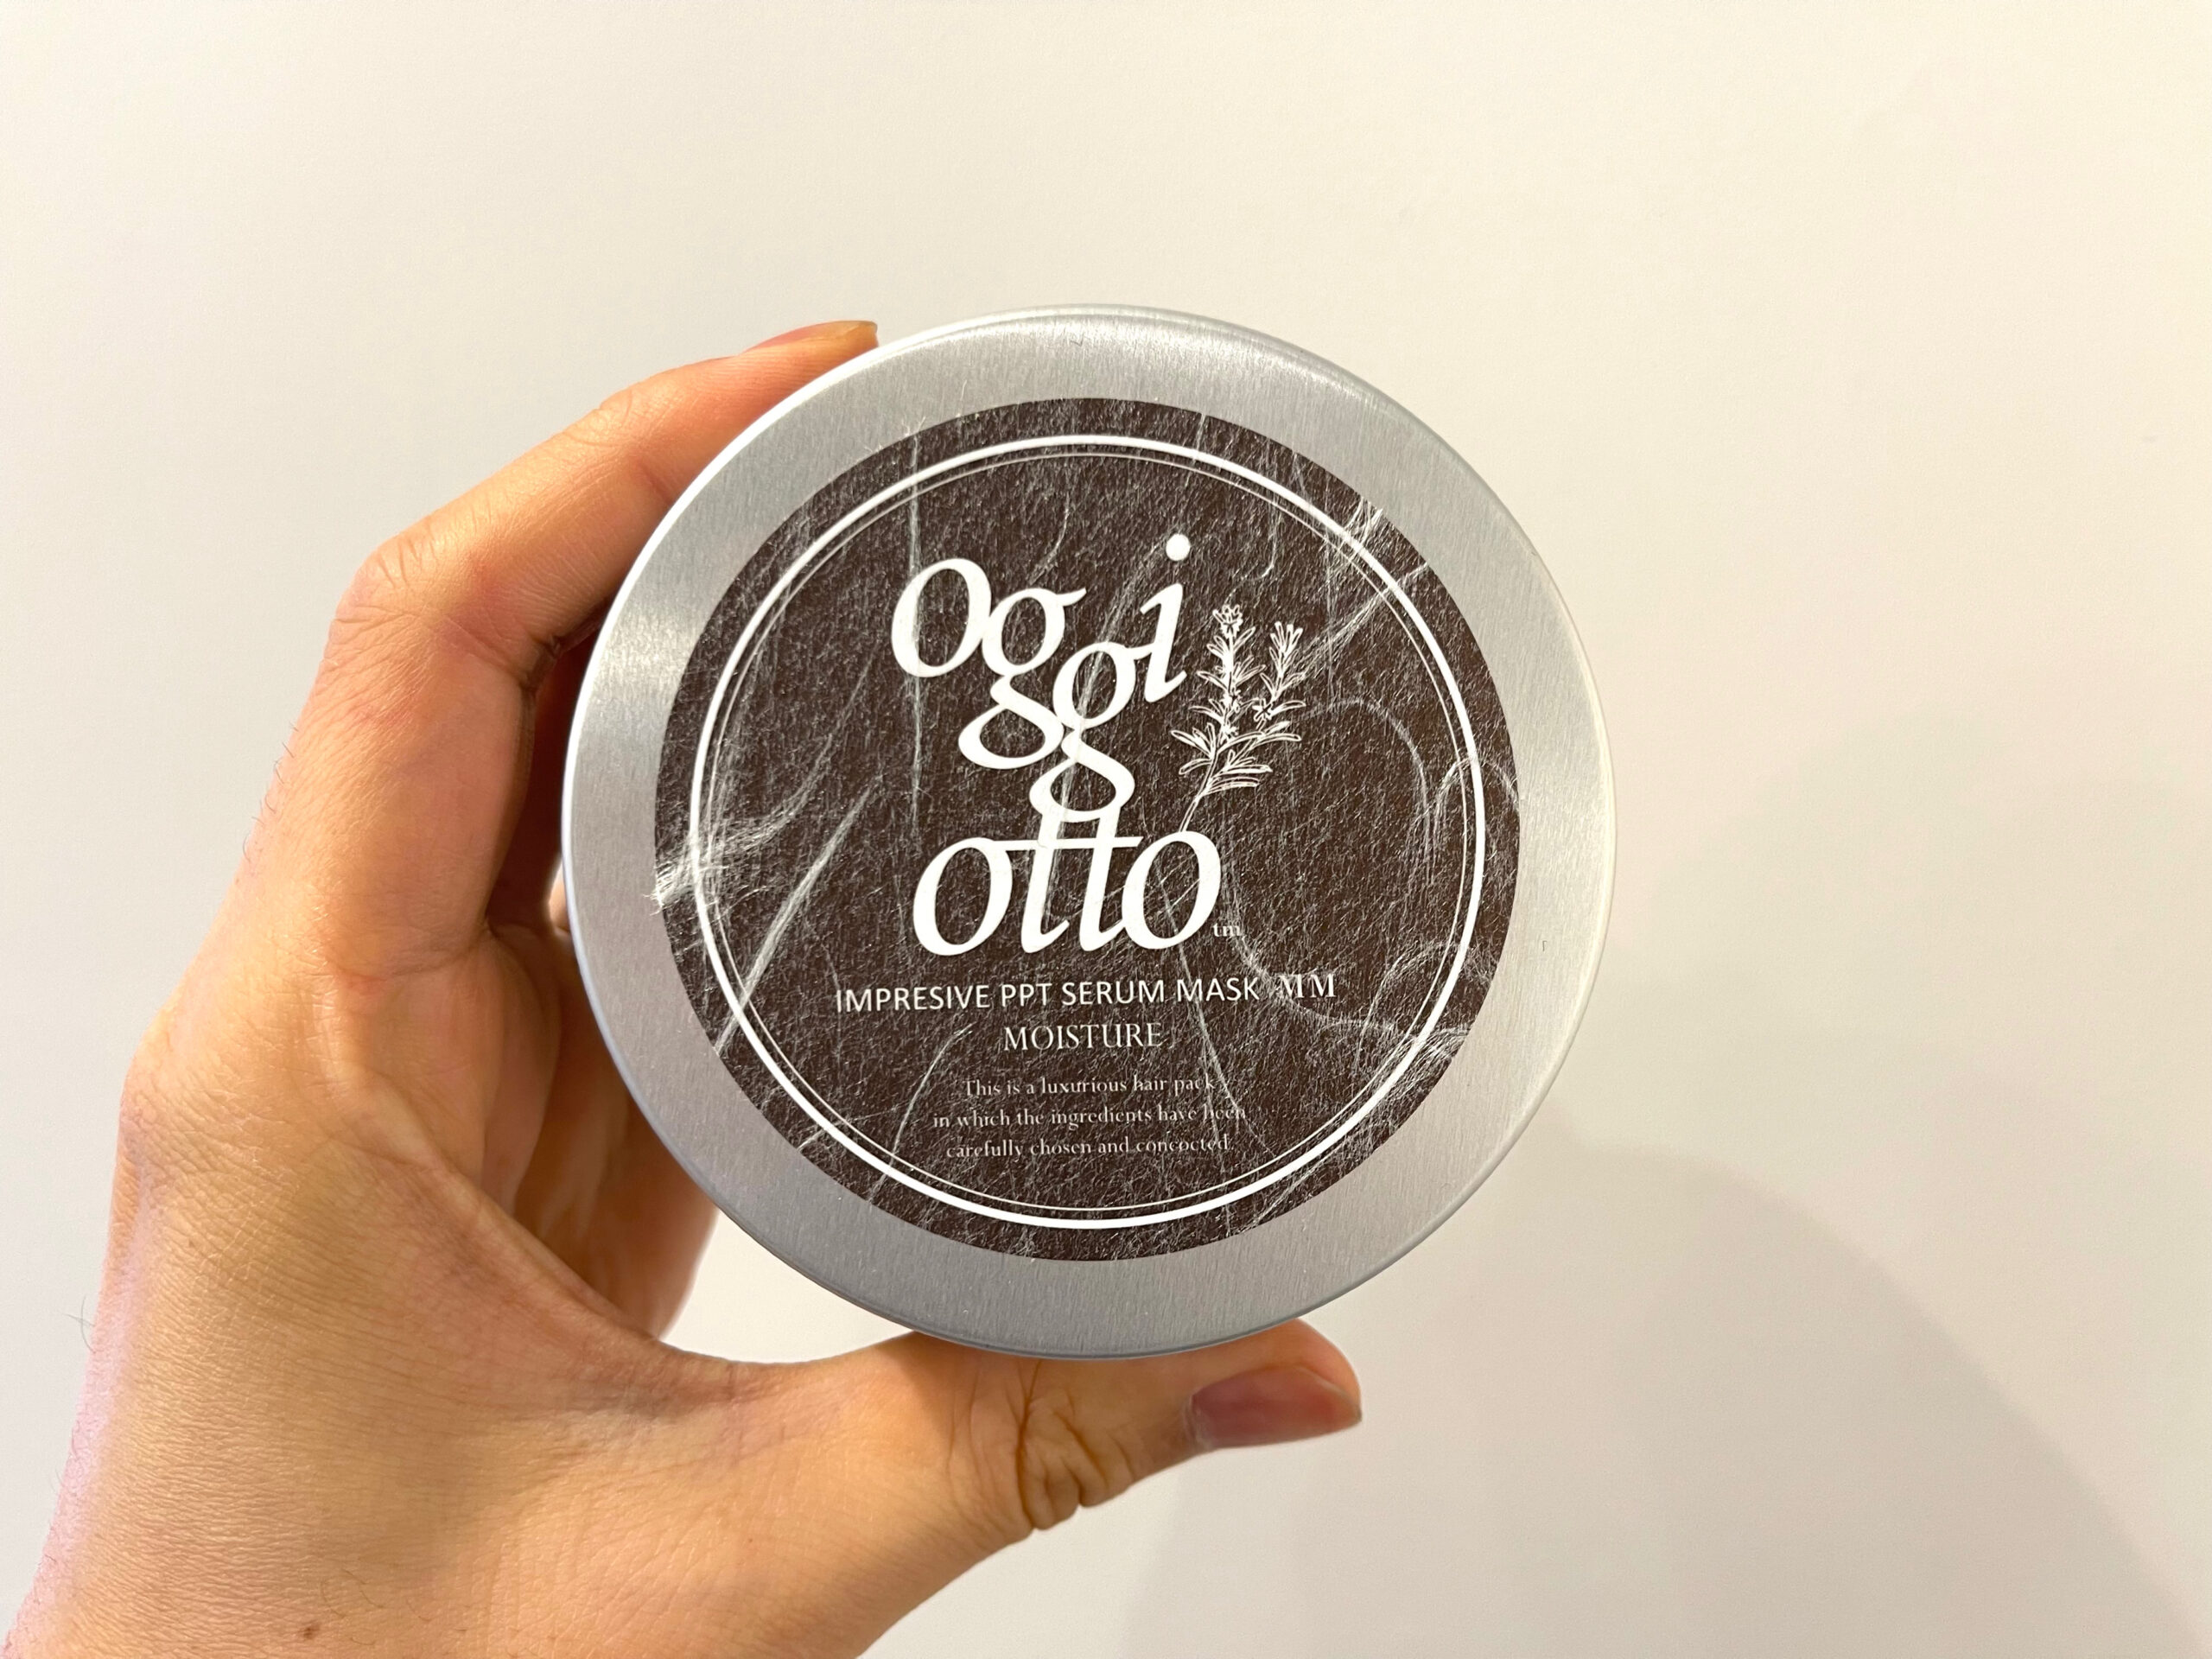 髪の乾燥が気になるならoggi otto(オッジィオット)はモイスチャー